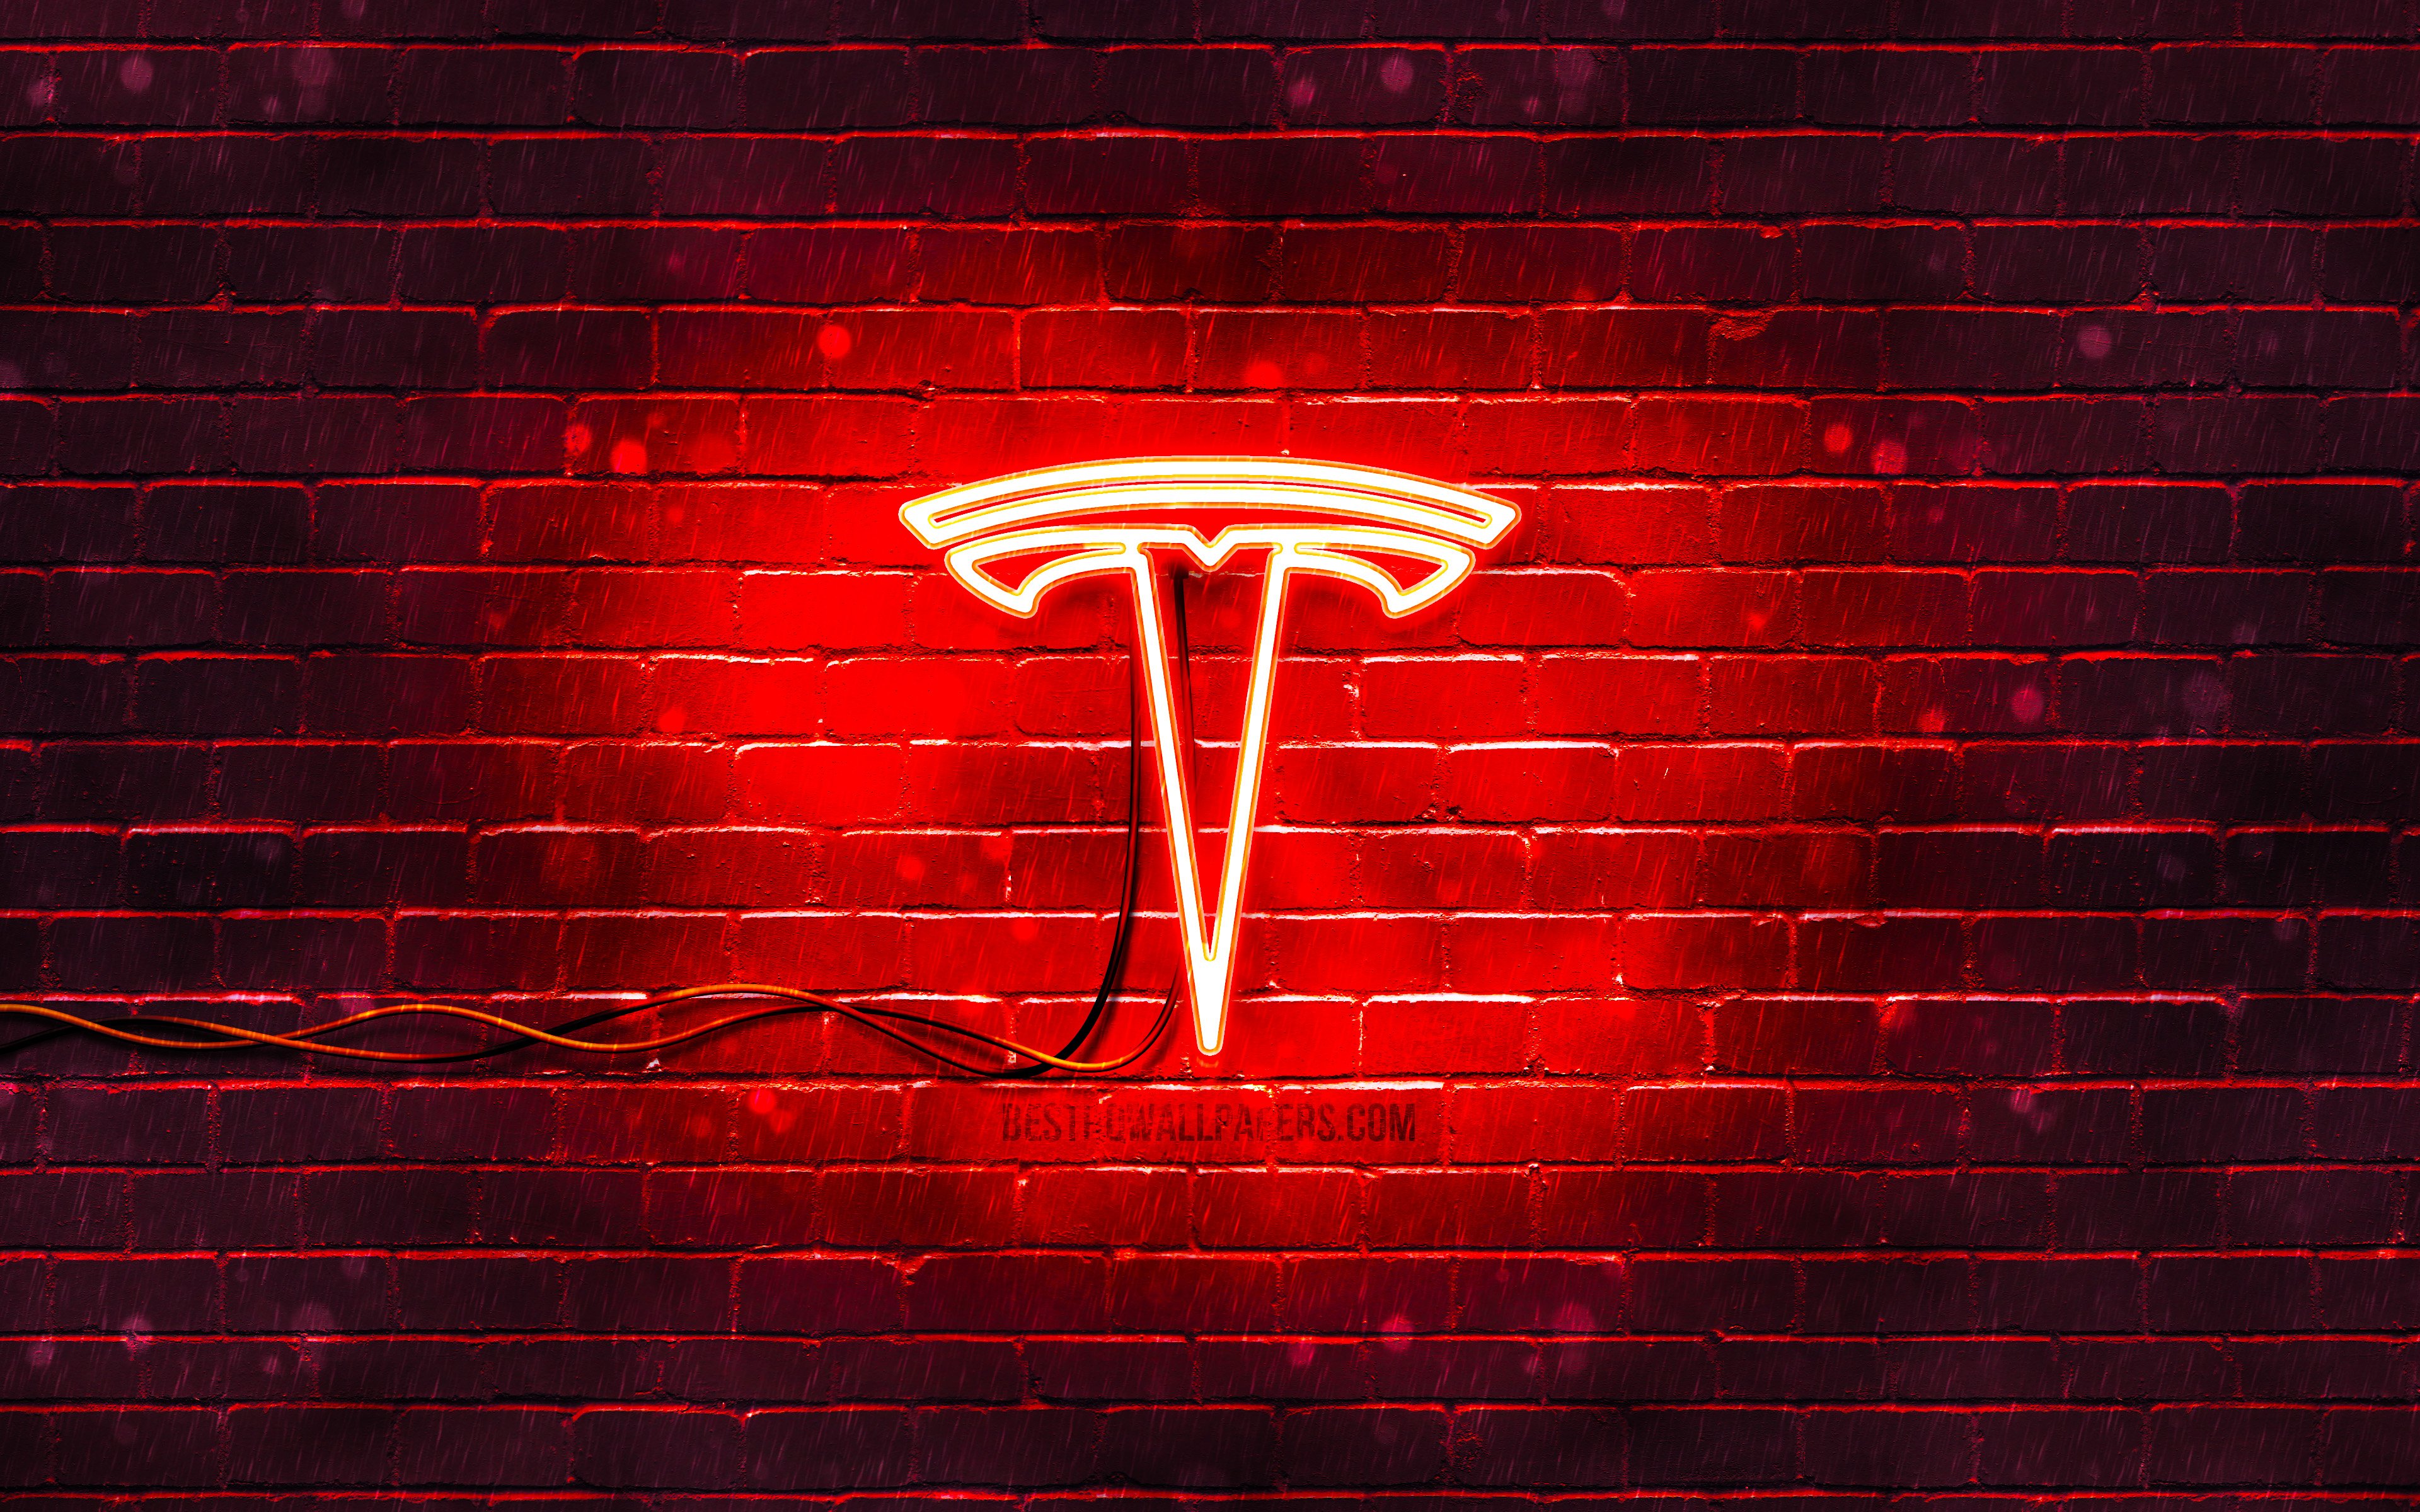 Download wallpapers Tesla red logo, 4k, red brickwall, Tesla logo, cars.